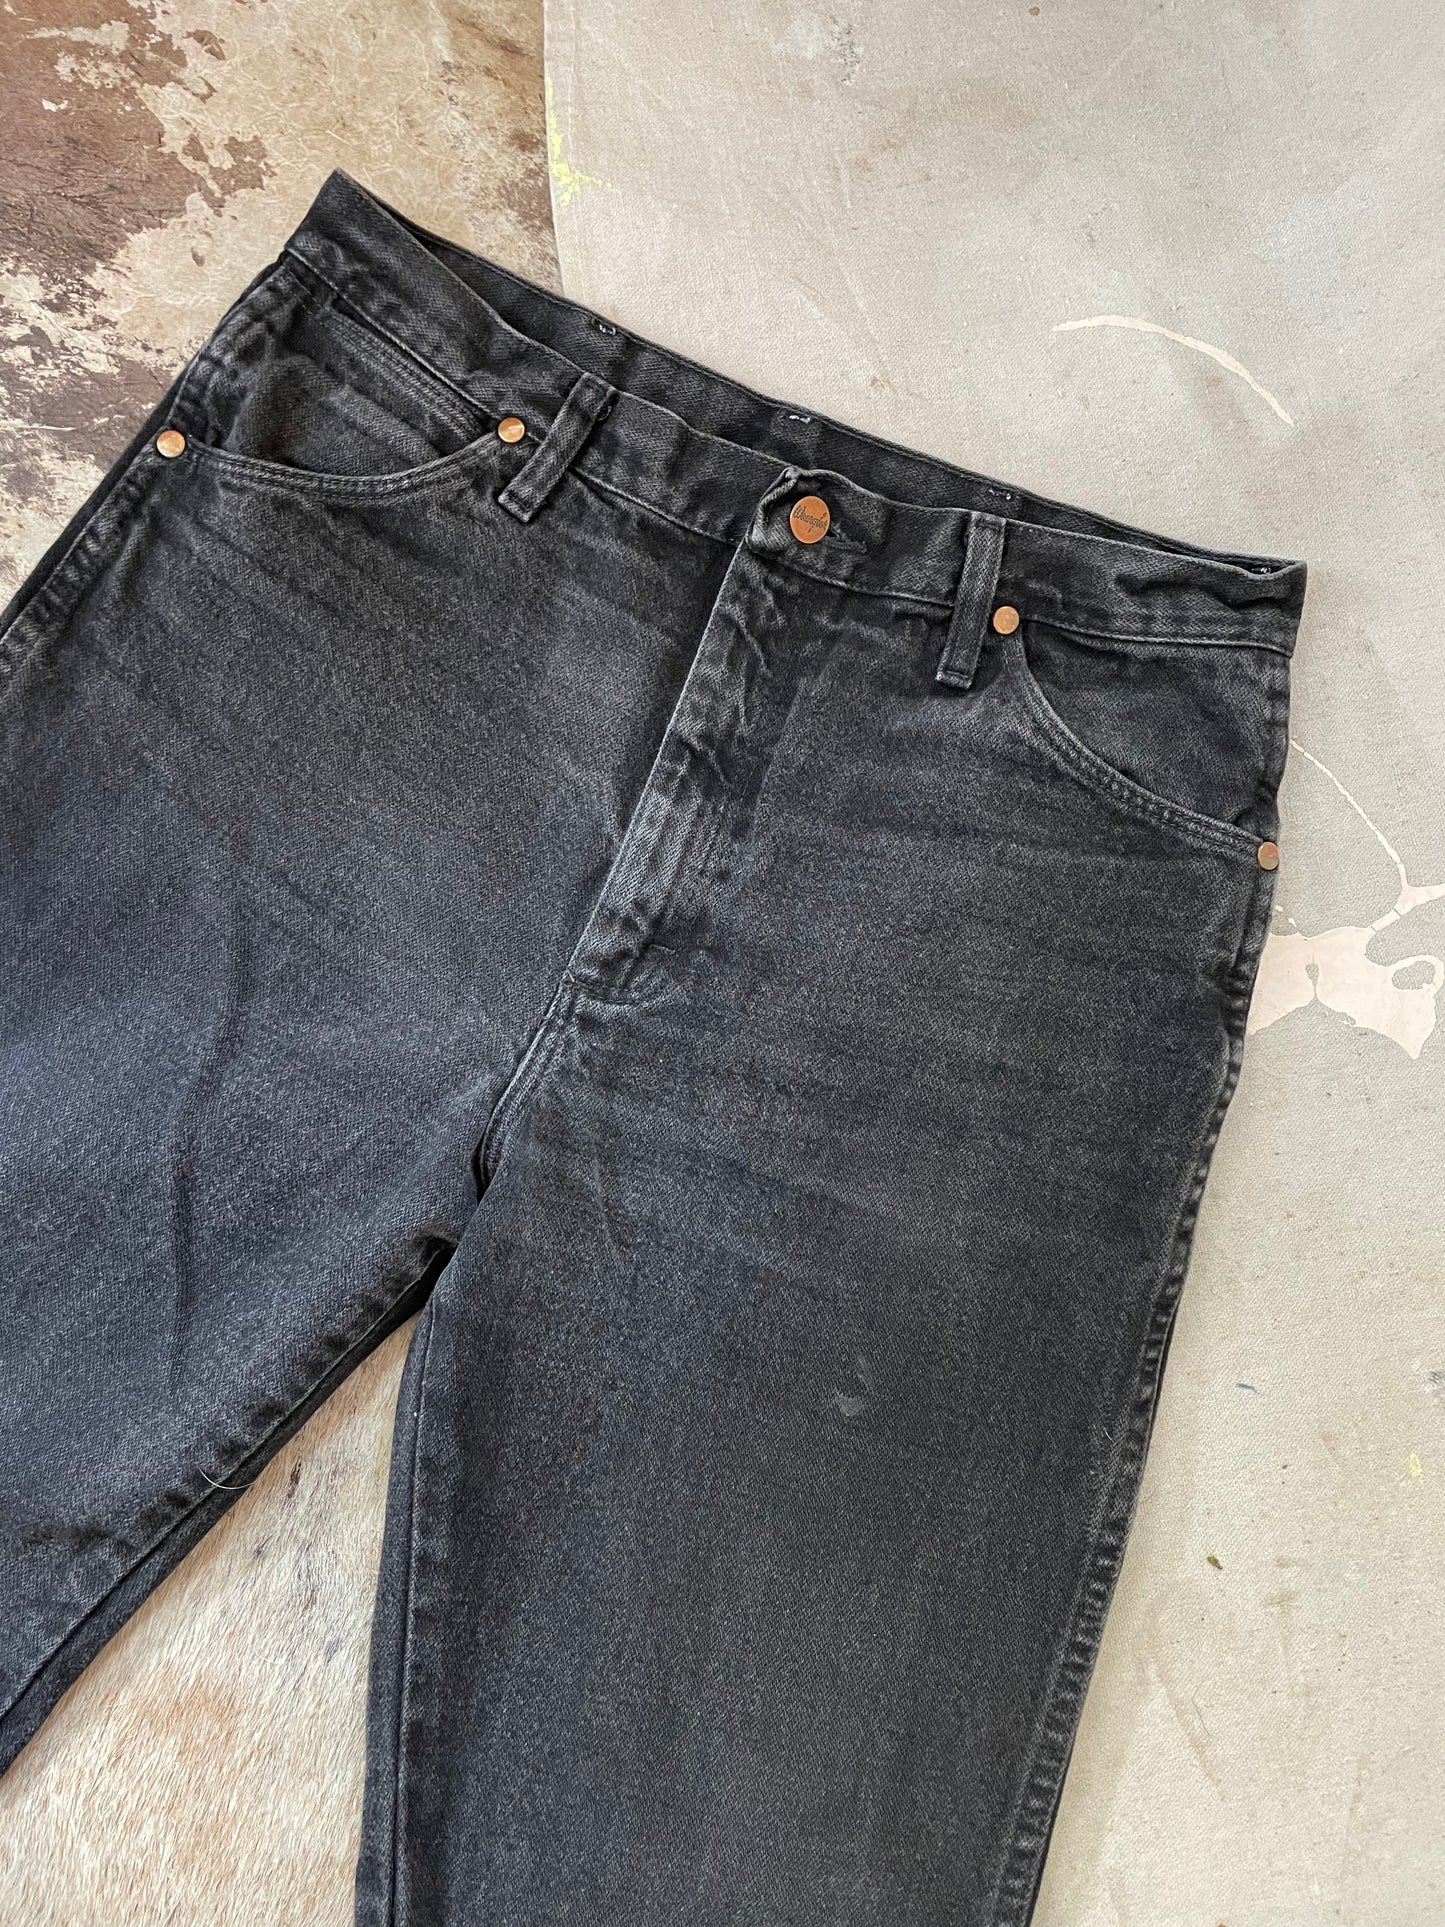 80s/90s Black Wrangler Jeans